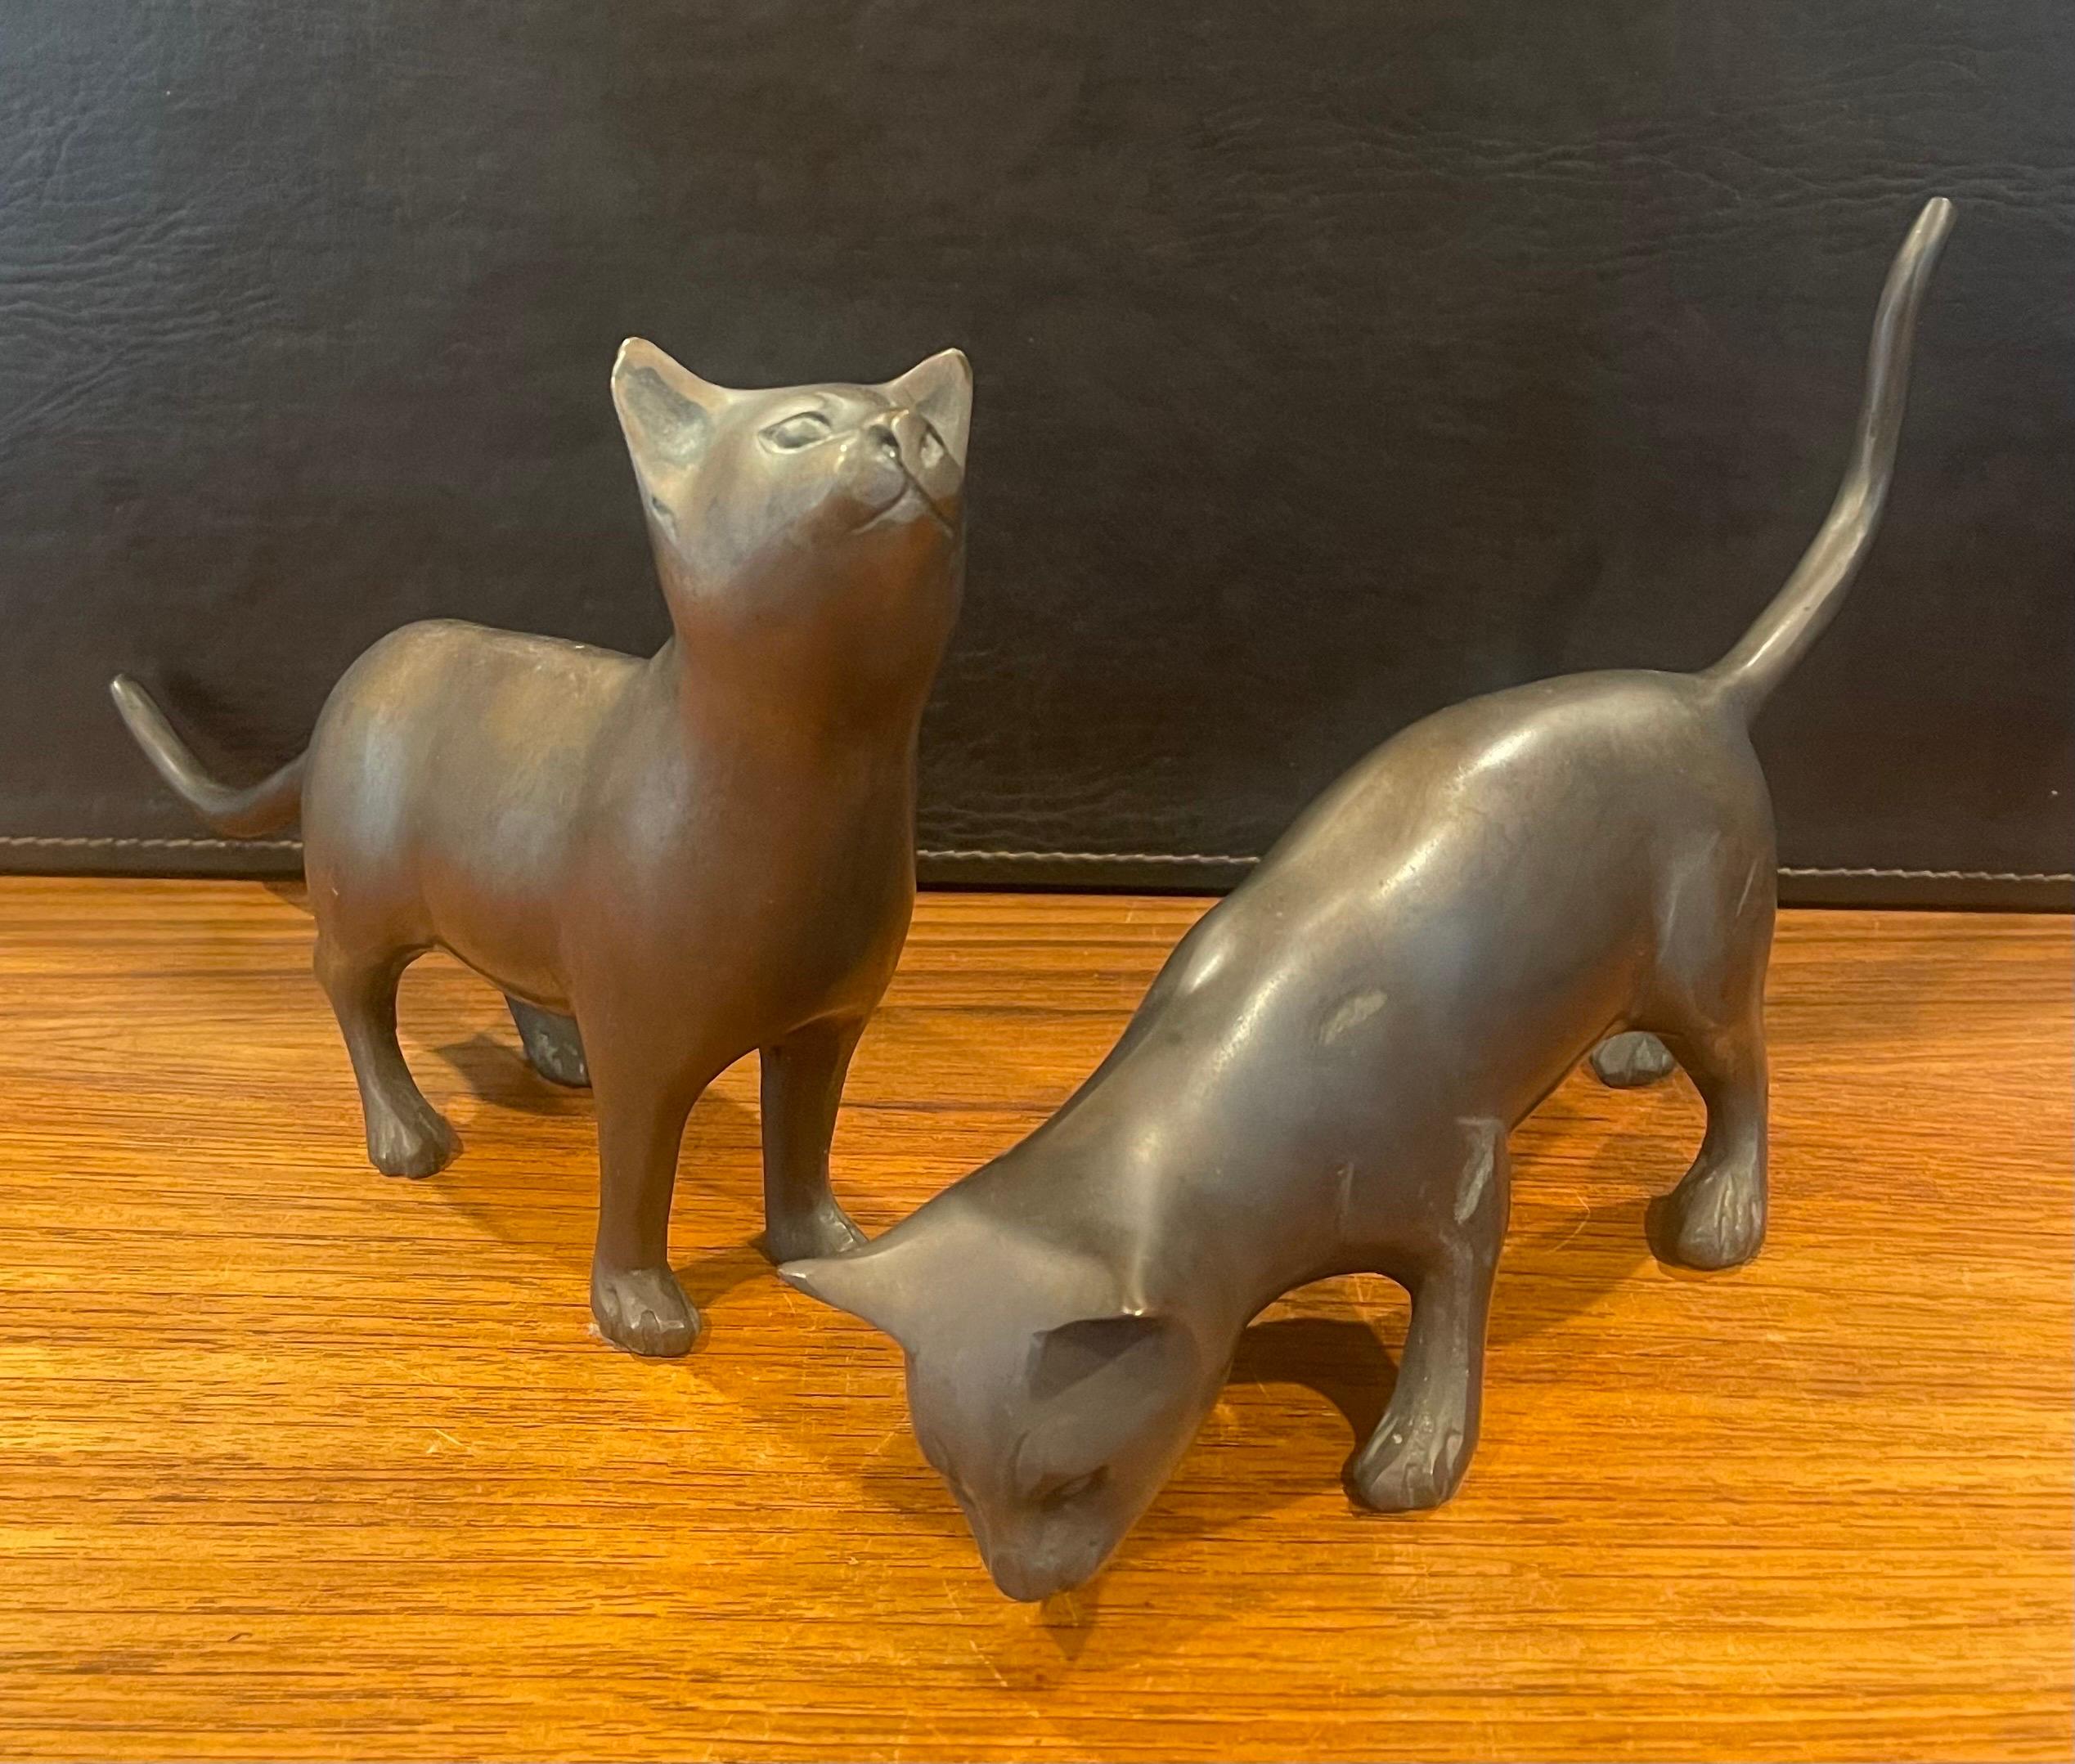 Cooles Paar Katzenskulpturen aus Bronze, ca. 1970er Jahre. Sie sind im Originalzustand mit einer feinen Patina und einigen kleinen Dellen und Oberflächenkratzern; das Paar misst jeweils 12 